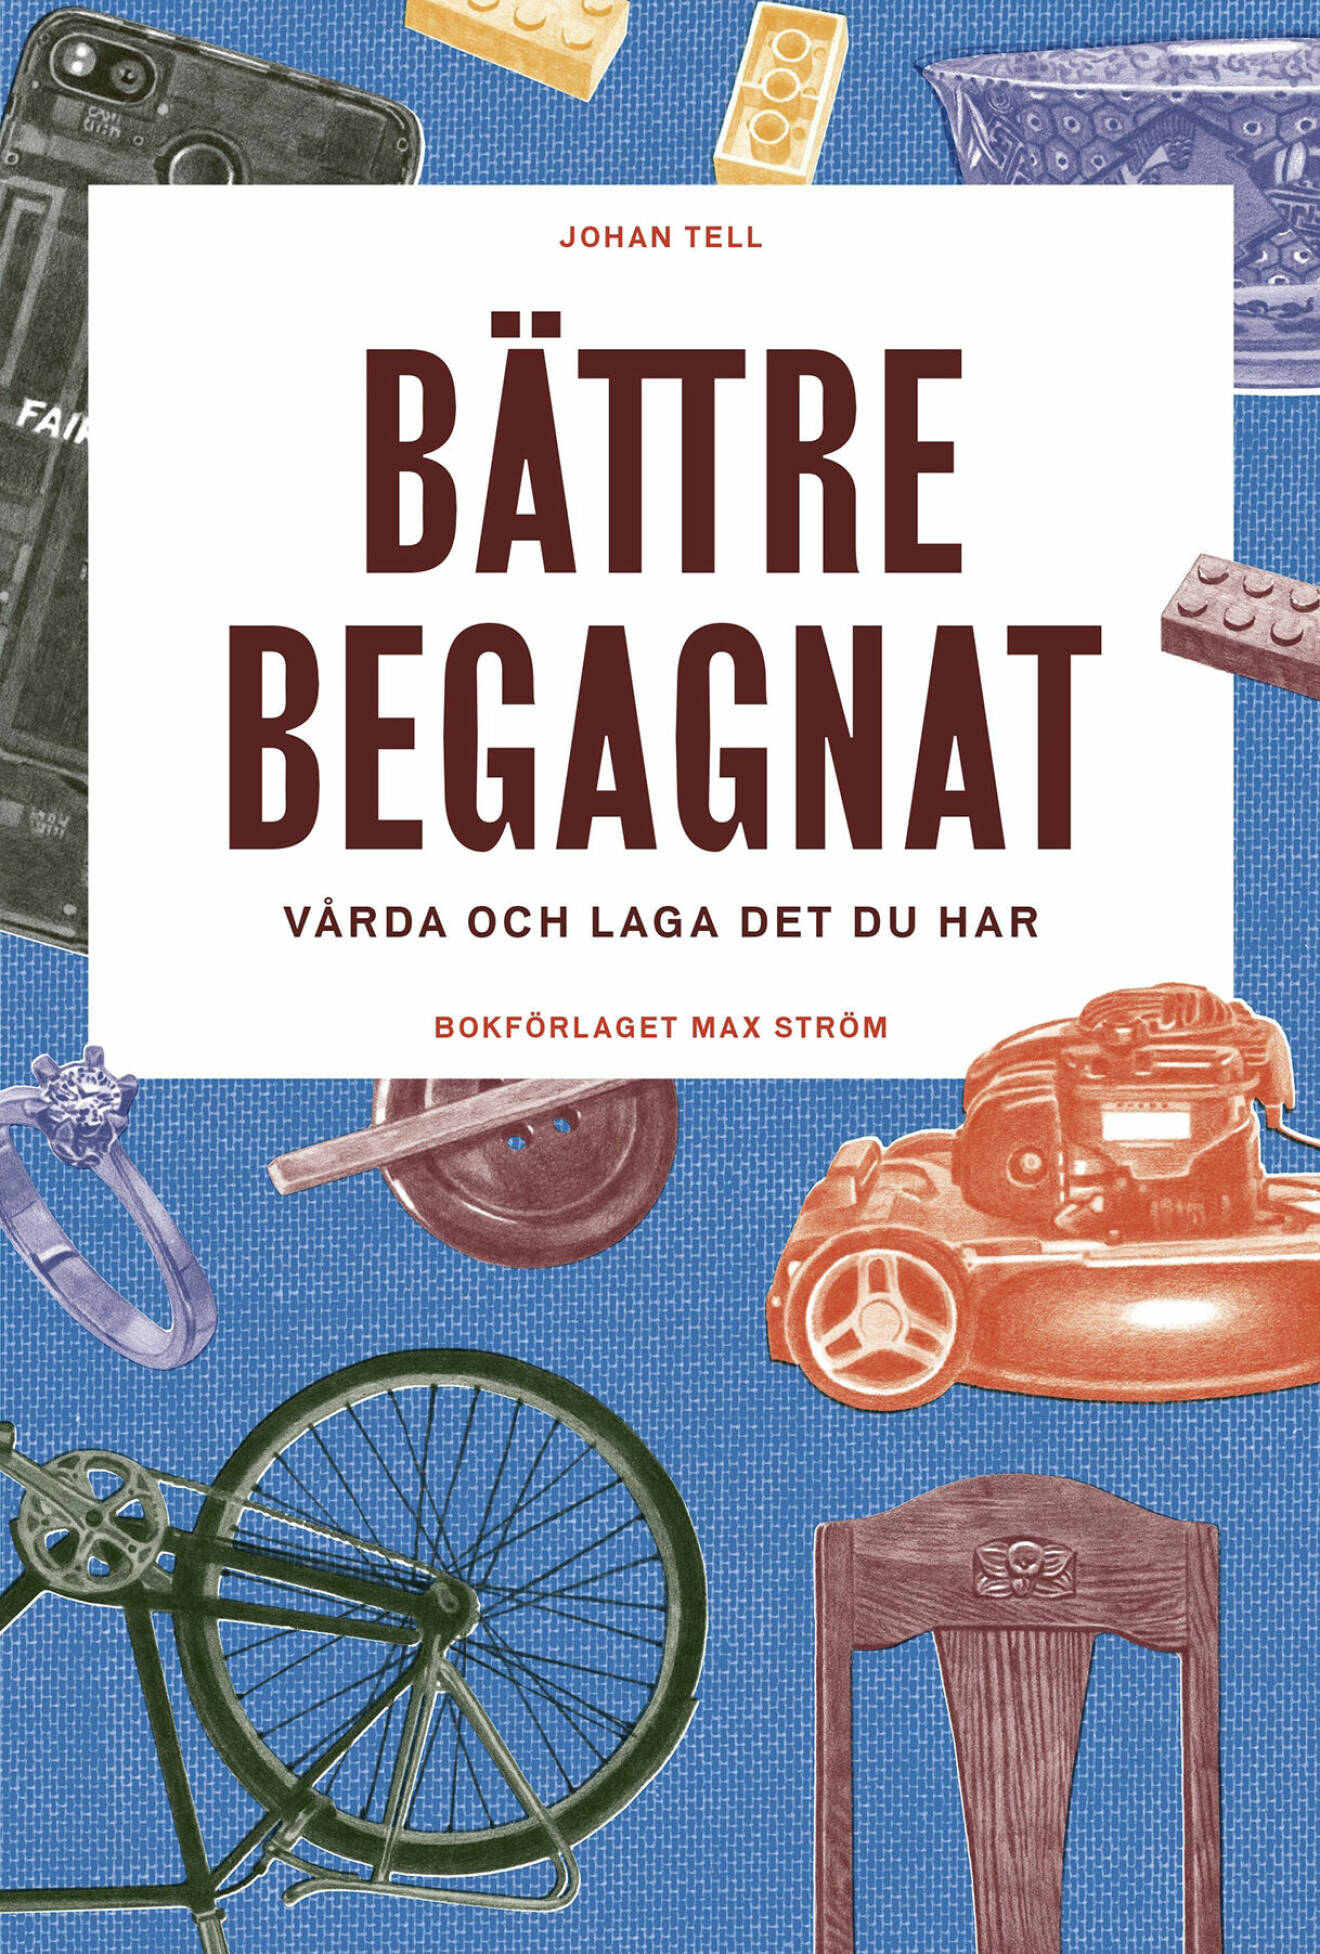 Johan Tells <i>Bättre begagnat</i> från 2020 är utgiven av Bokförlaget Max Ström.